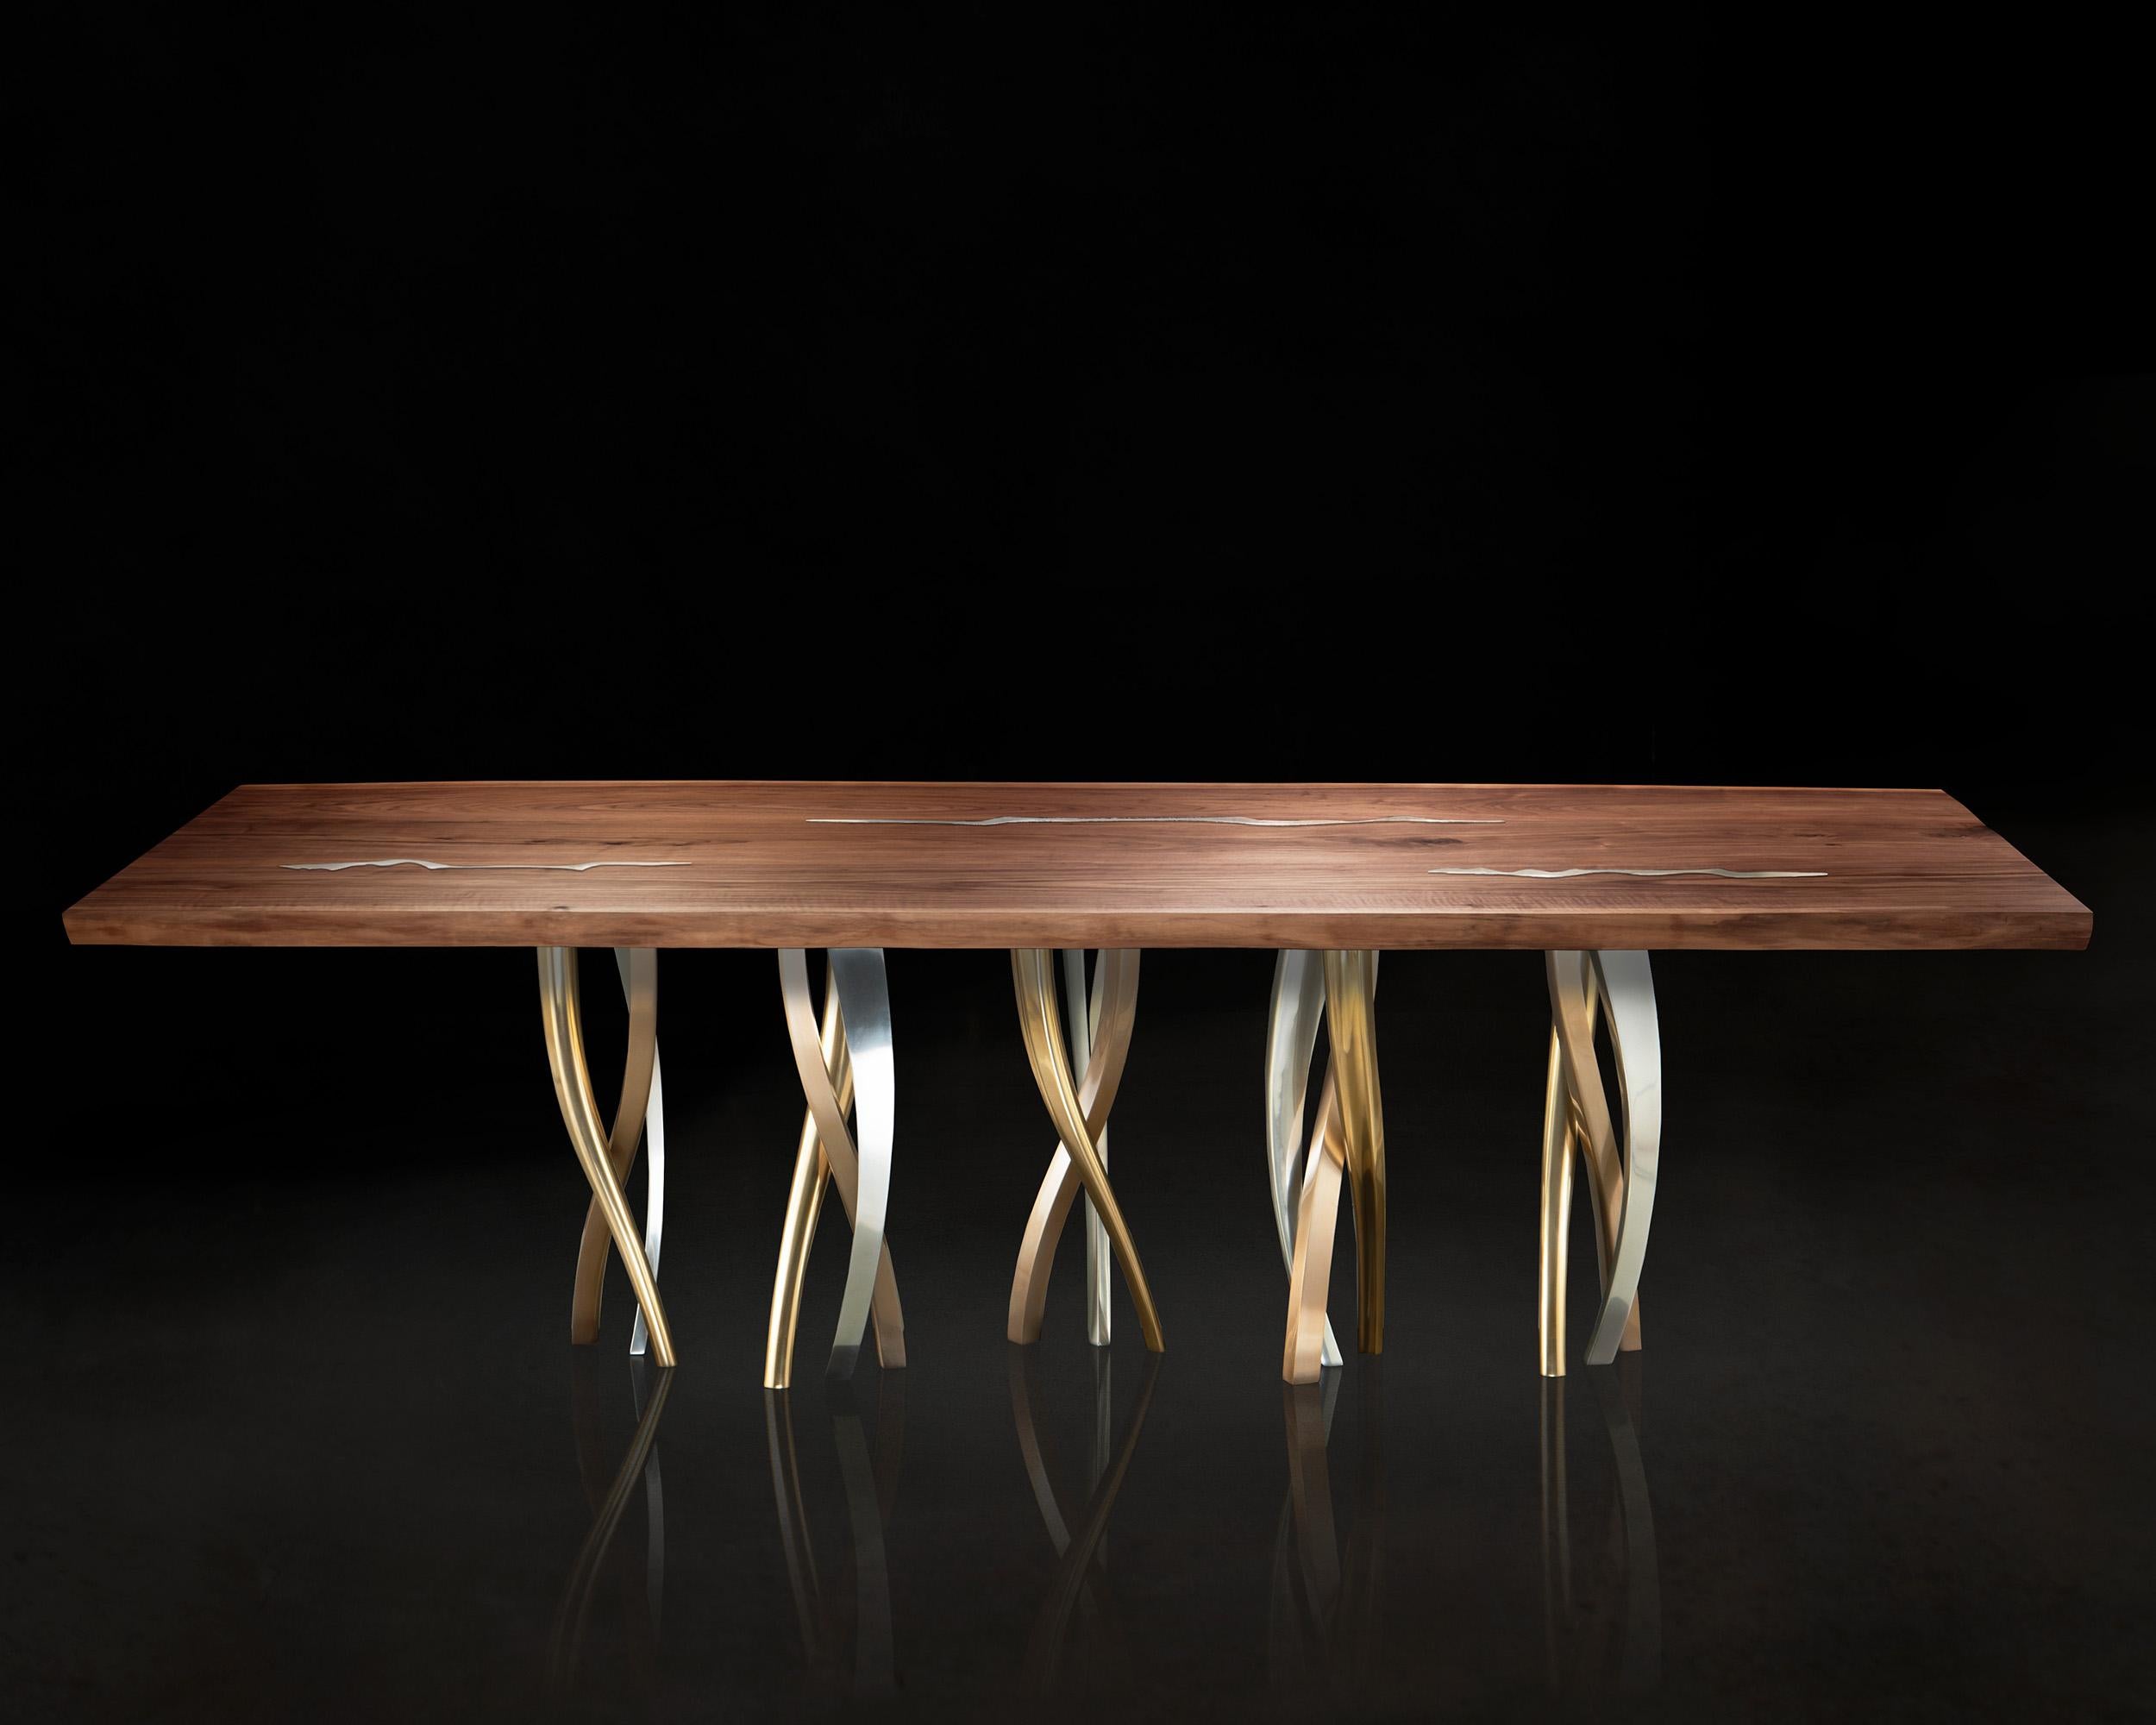 Ein funkelnder Wald von Beinen trägt einen majestätischen Holzblock mit starken, lebendigen Konturen. Il Pezzo 8 Table ist eine Kollektion von Farben, Formen und MATERIALEN, in der man sich verlieren kann. Er ist romantisch, geschmeidig und leicht